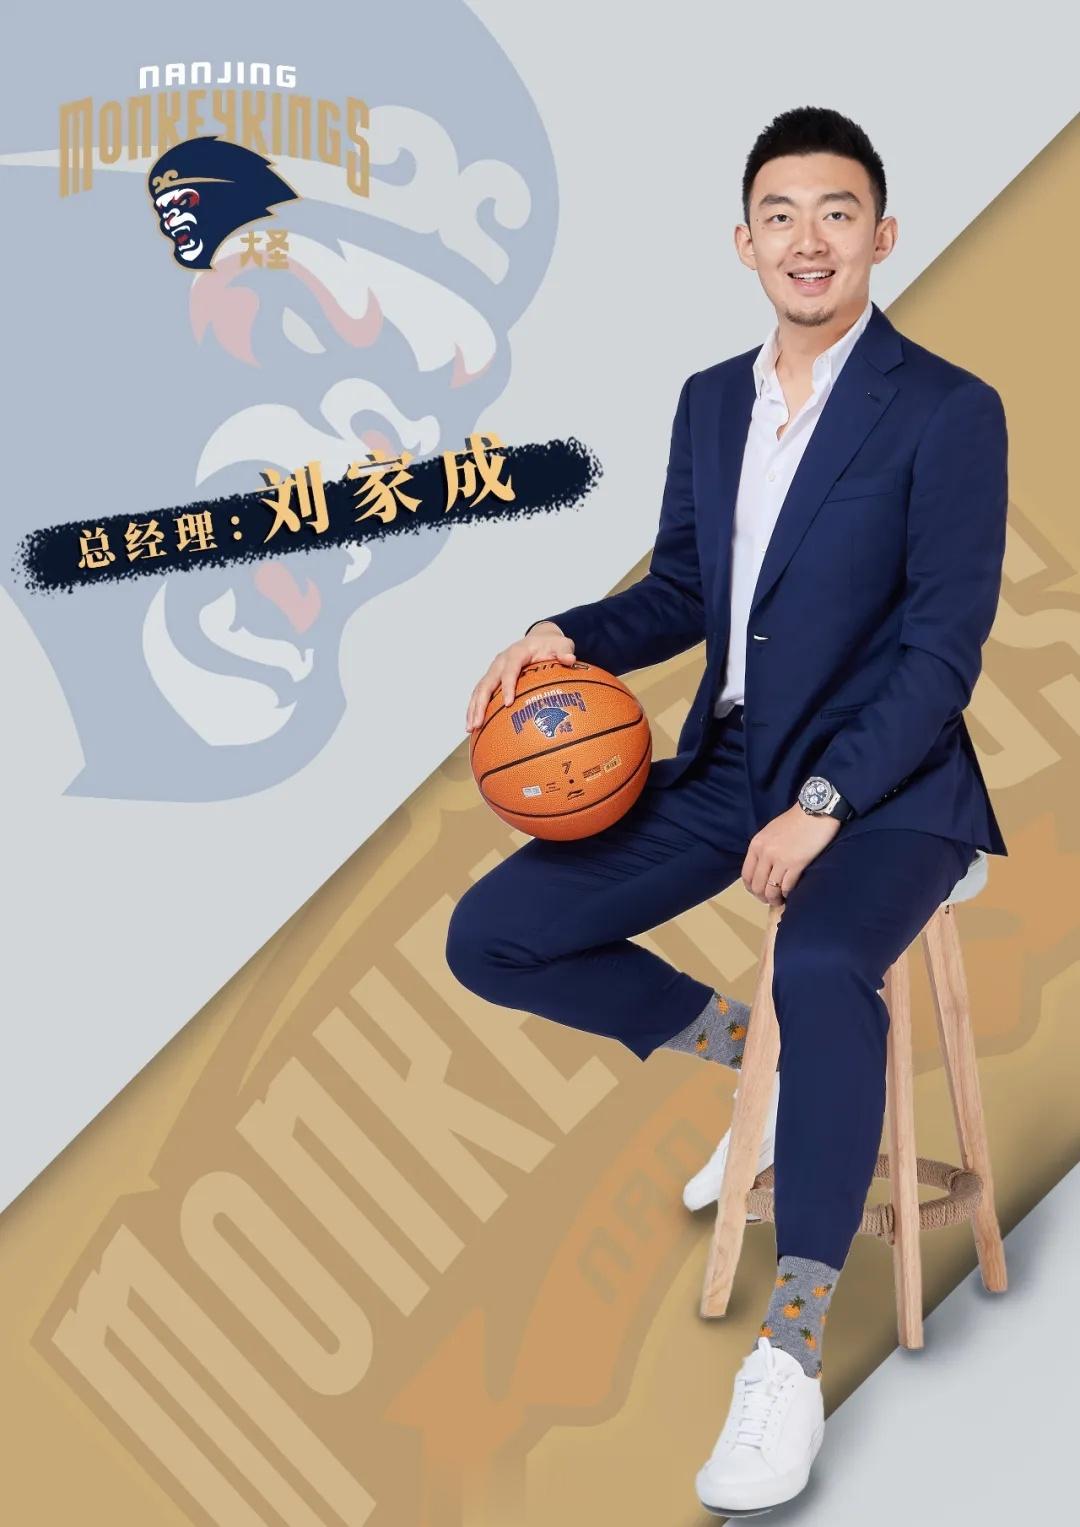 南京同曦官宣：聘请刘家成担任球队总经理。刘家成是国内篮球圈知名经纪人，阿不都沙拉(2)